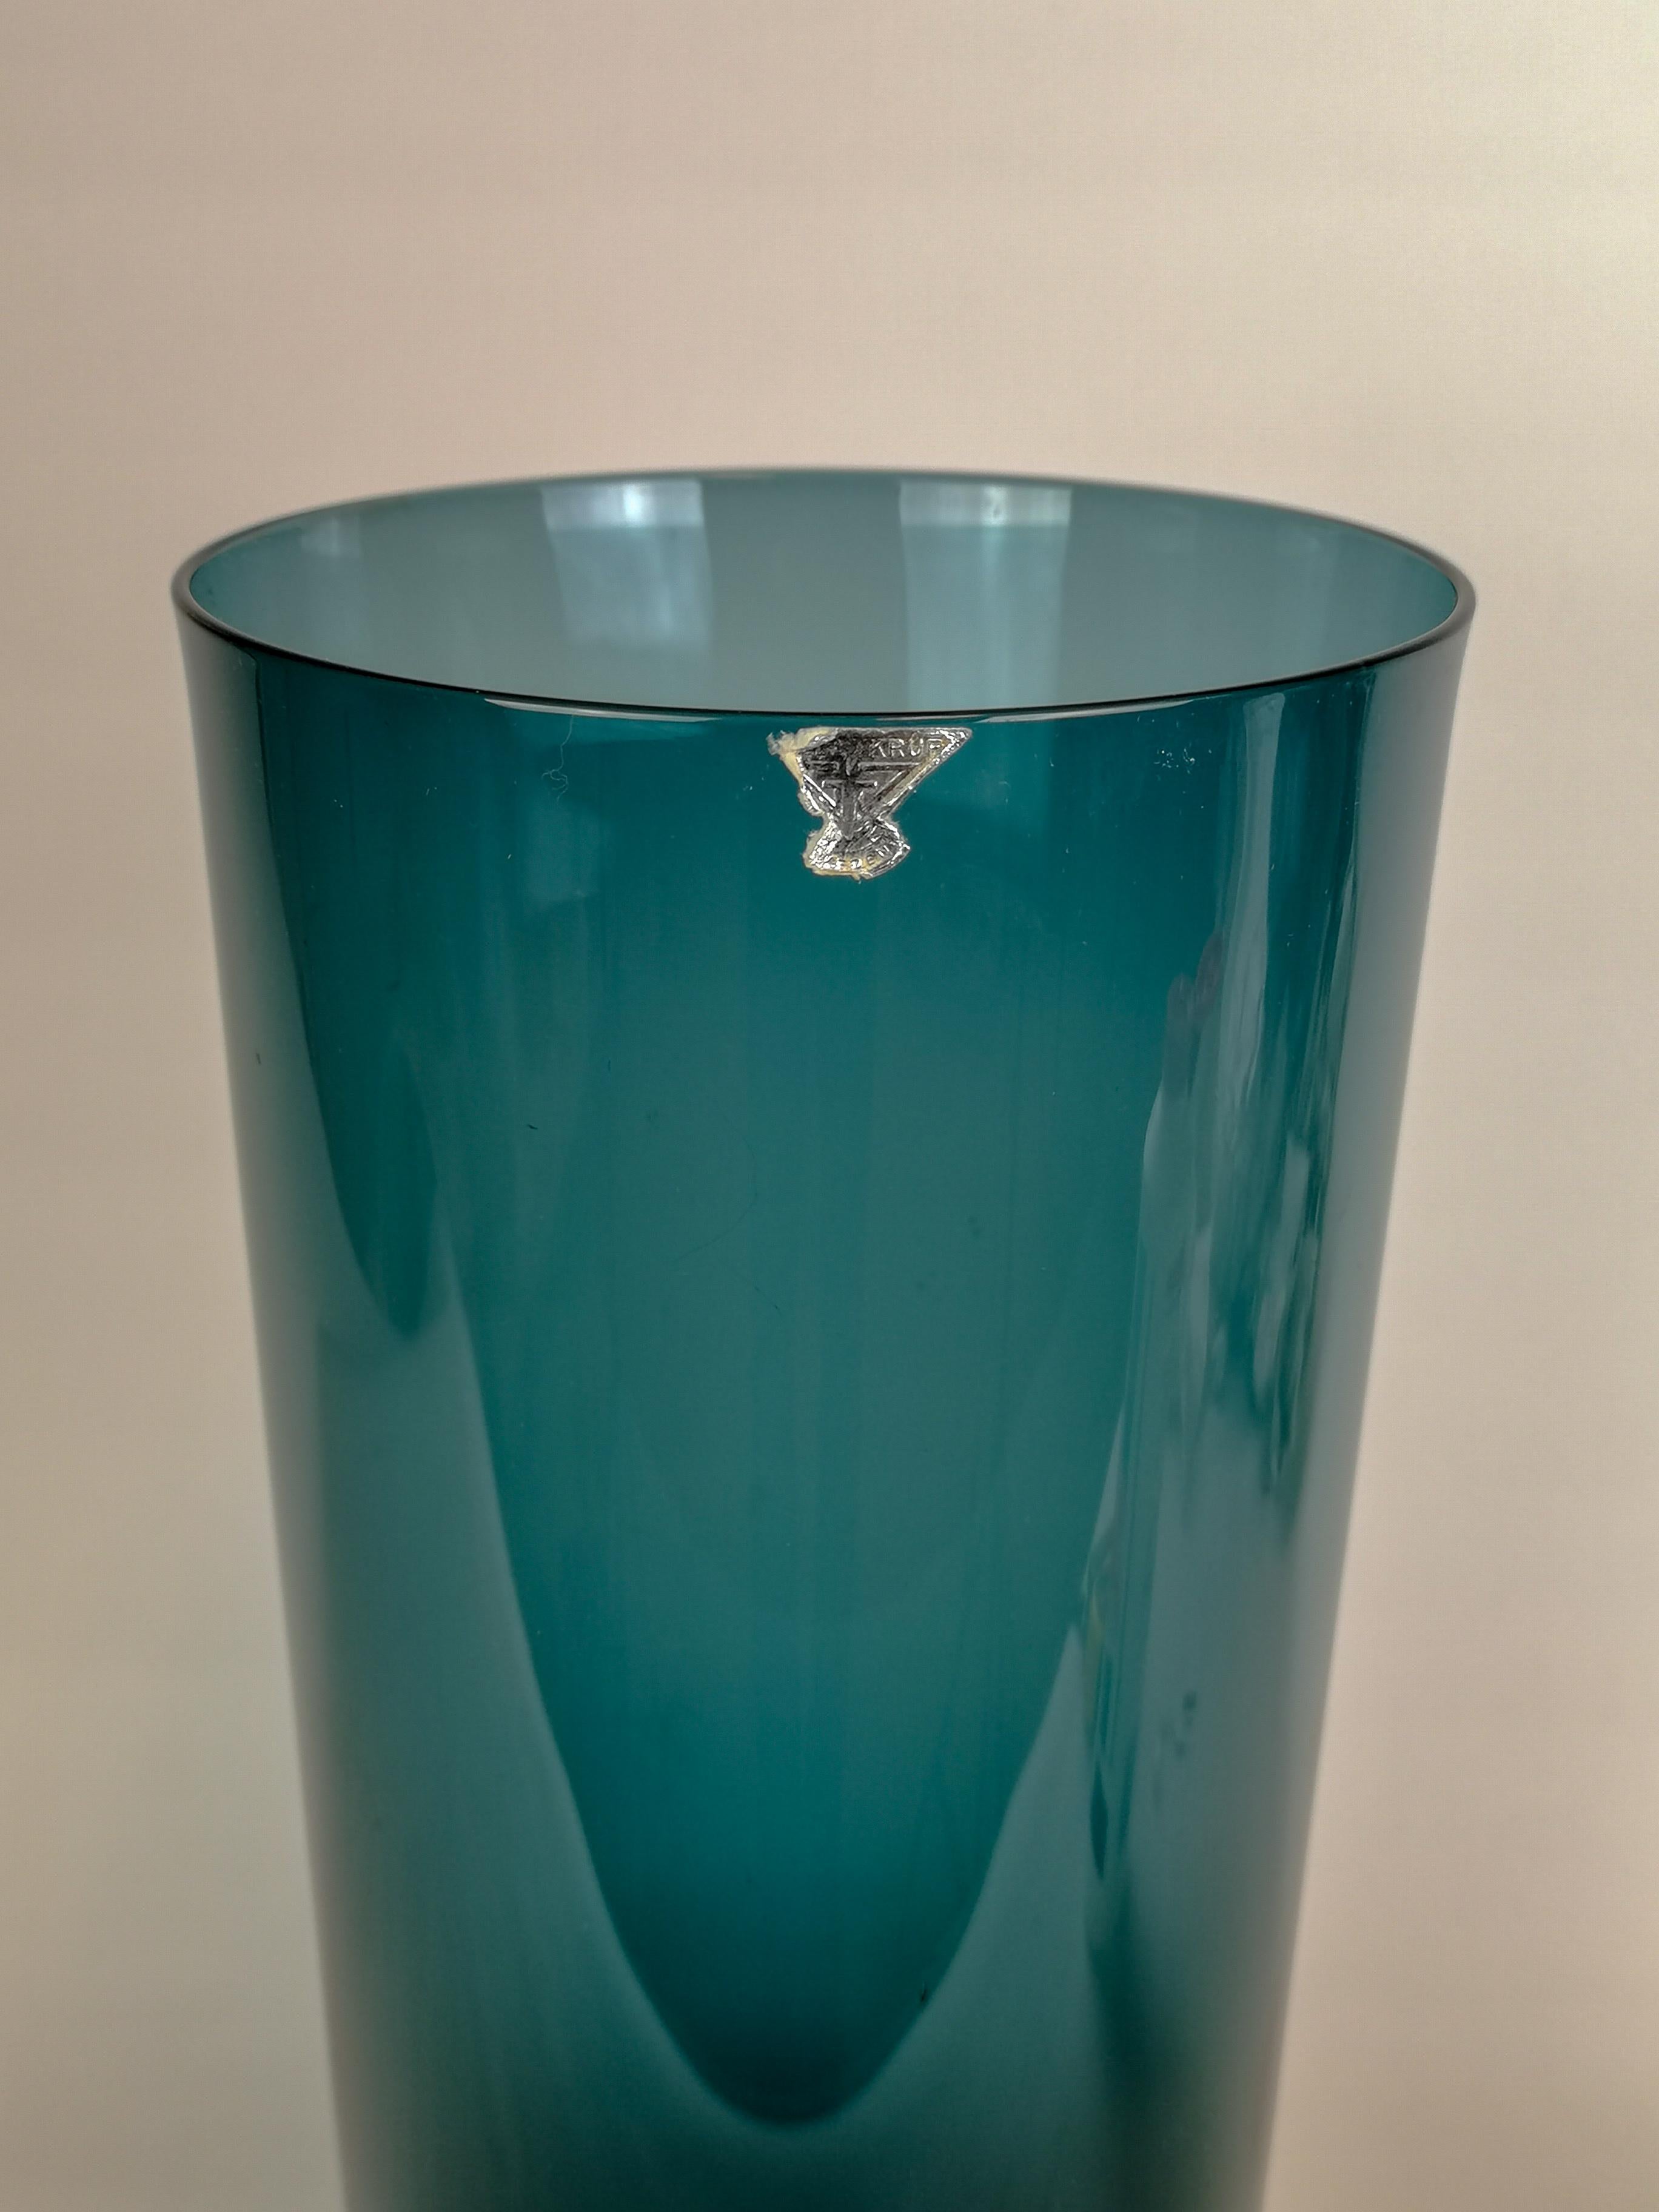 Diese wunderschöne große Vase, die in Schweden bei GullaSkruf hergestellt wird, wurde in den 1950er Jahren von Kjell Blomberg entworfen.
Sie hat eine schöne Farbe und wie viele Designer aus Schweden hat die Leuchte einen zentralen Teil, der dem